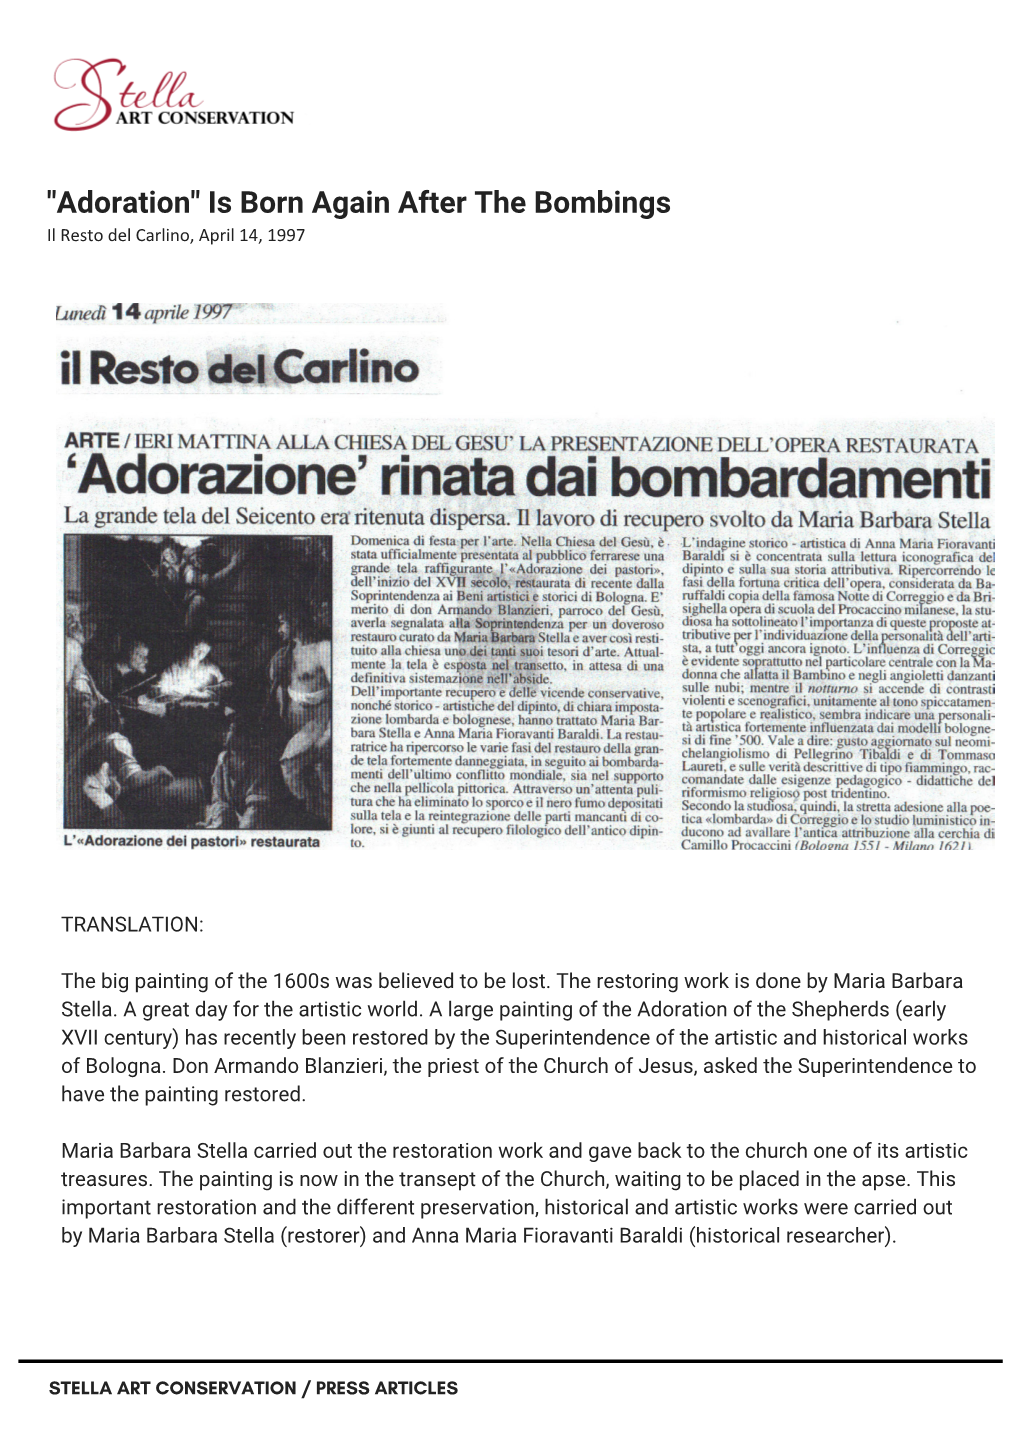 "Adoration" Is Born Again After the Bombings Il Resto Del Carlino, April 14, 1997